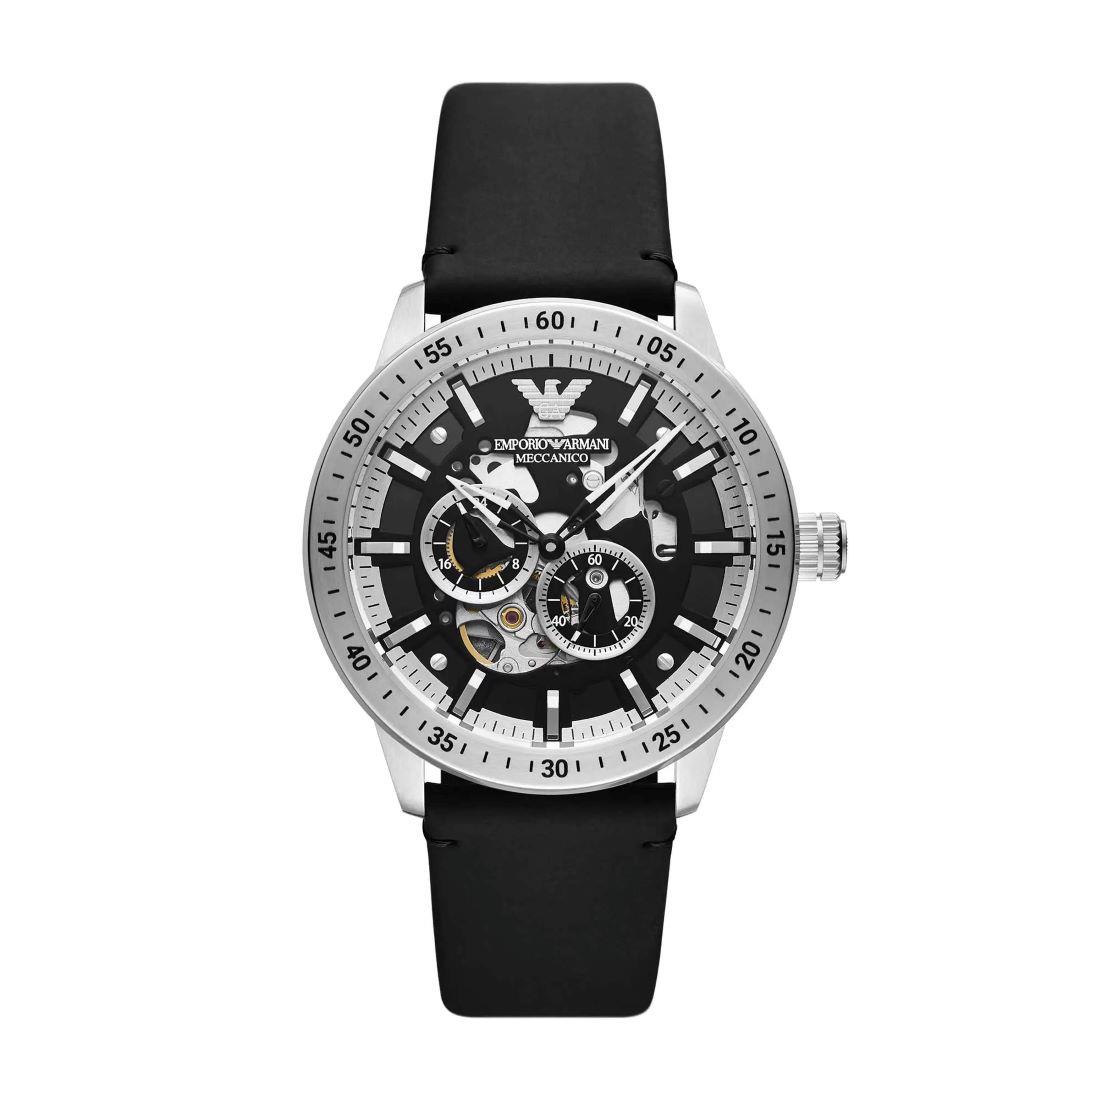 Men's watch, 43mm case - EMPORIO ARMANI